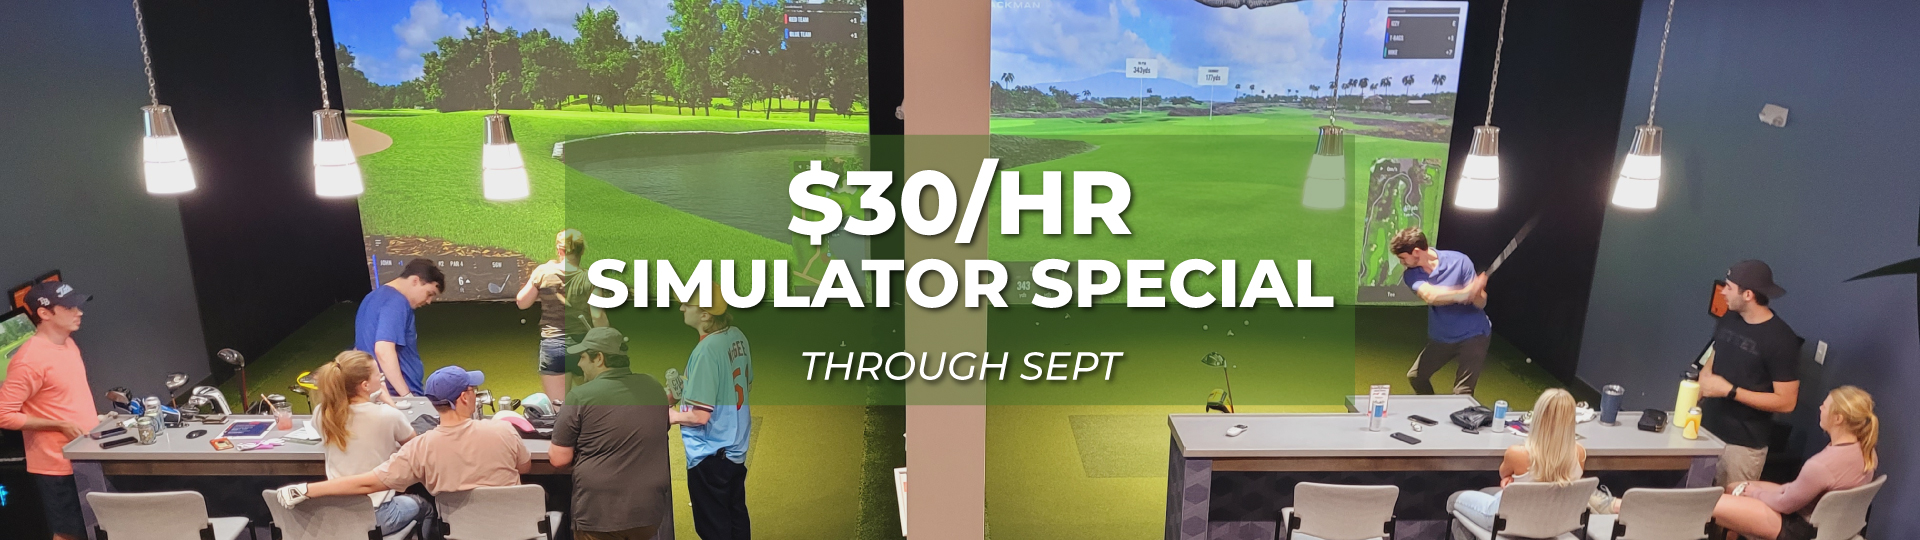 30 an hour simulator special